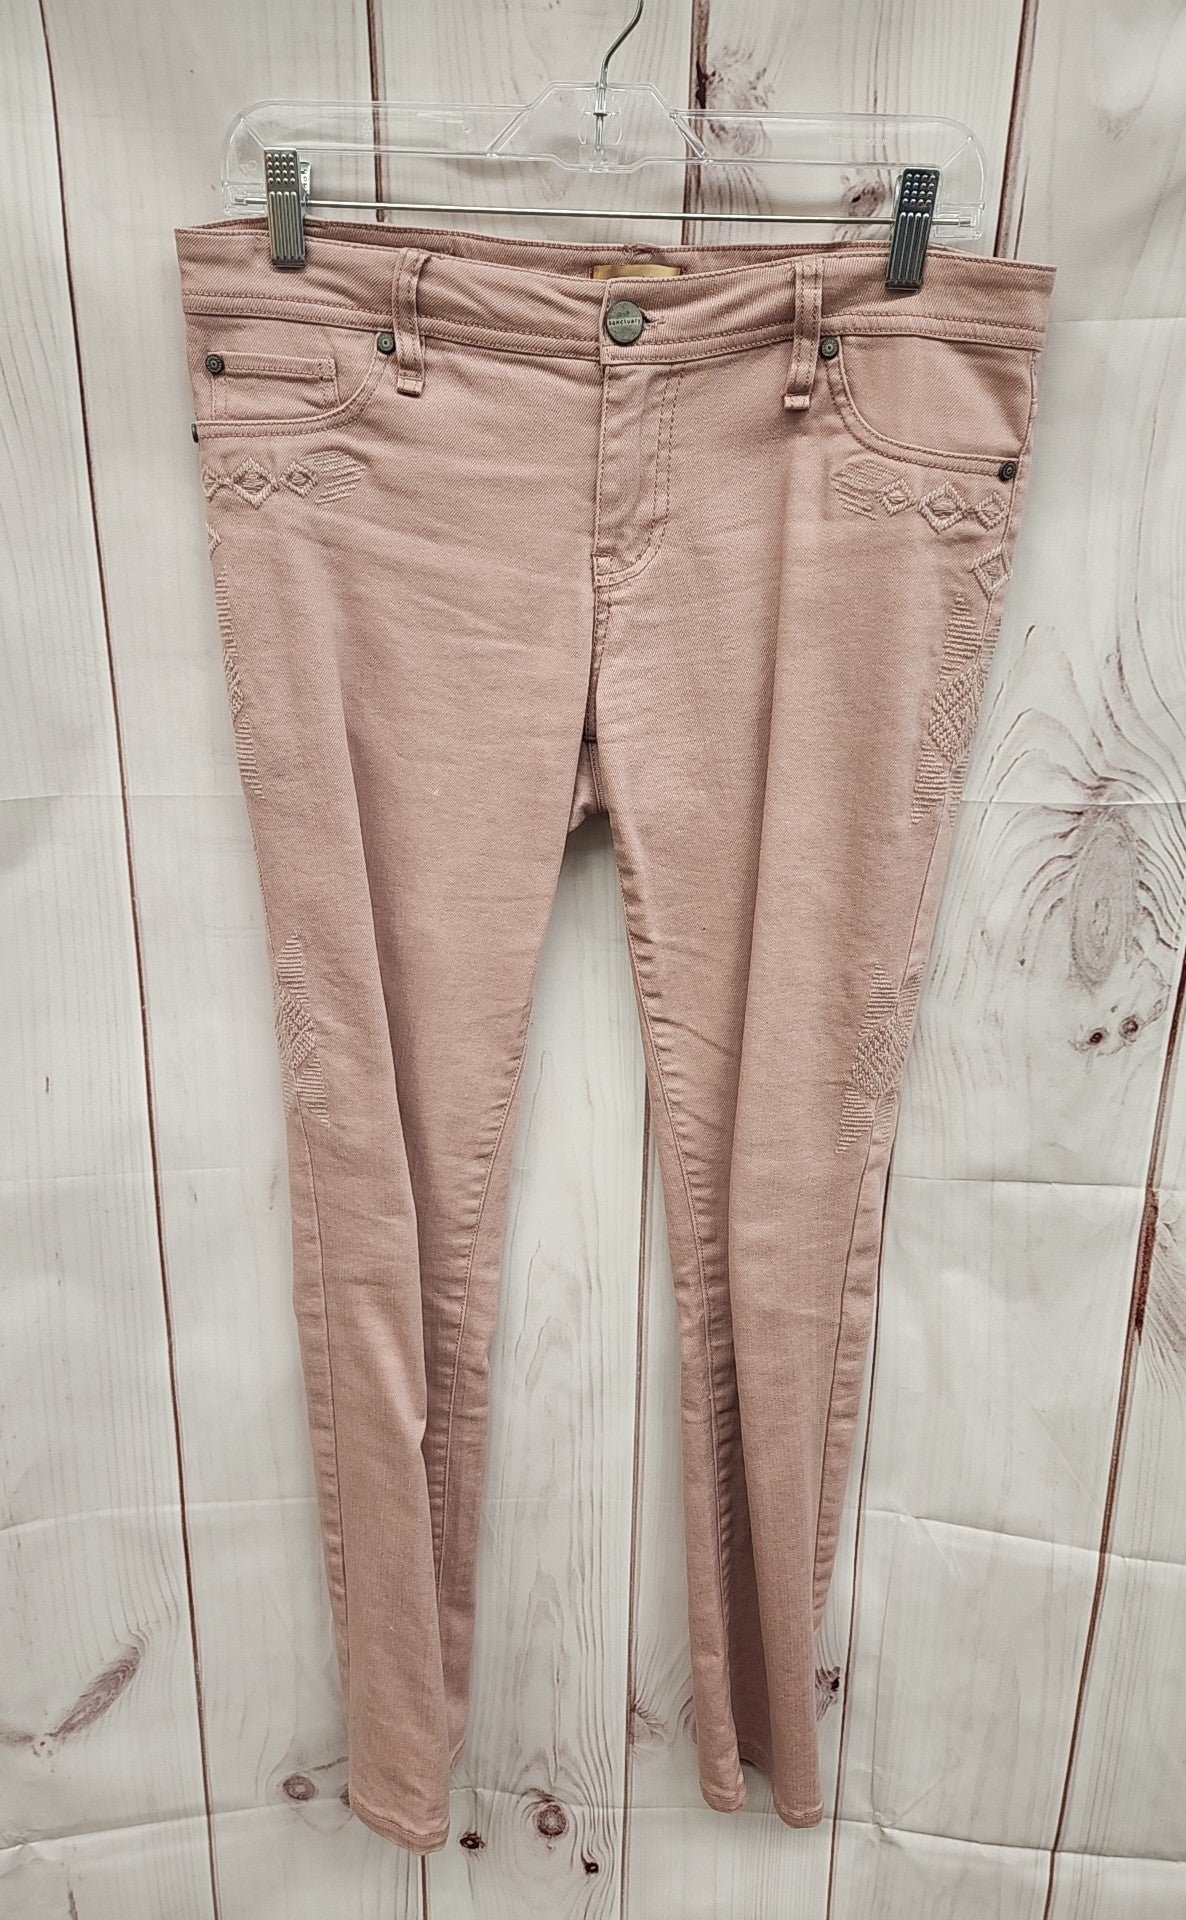 Sanctuary Women's Size 29 (7-8) Pink Jeans